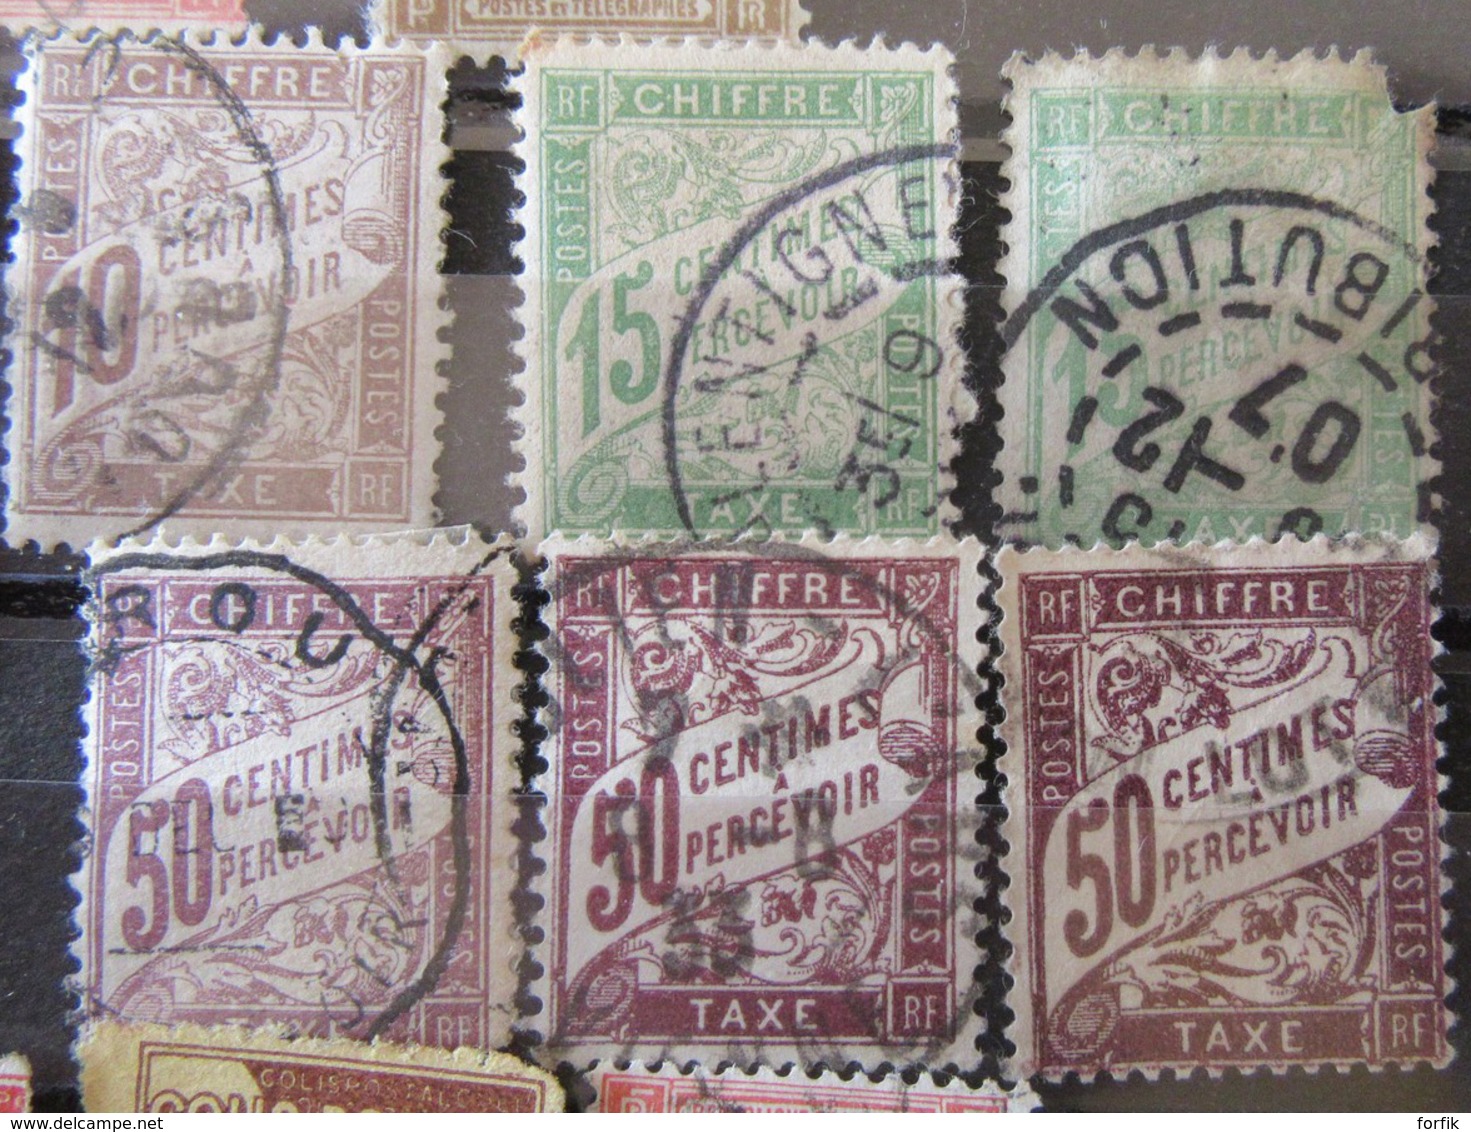 France - Lot de timbres principalement taxe dont n°1 et n°20 oblitérés + FM et Colis Postaux - A étudier